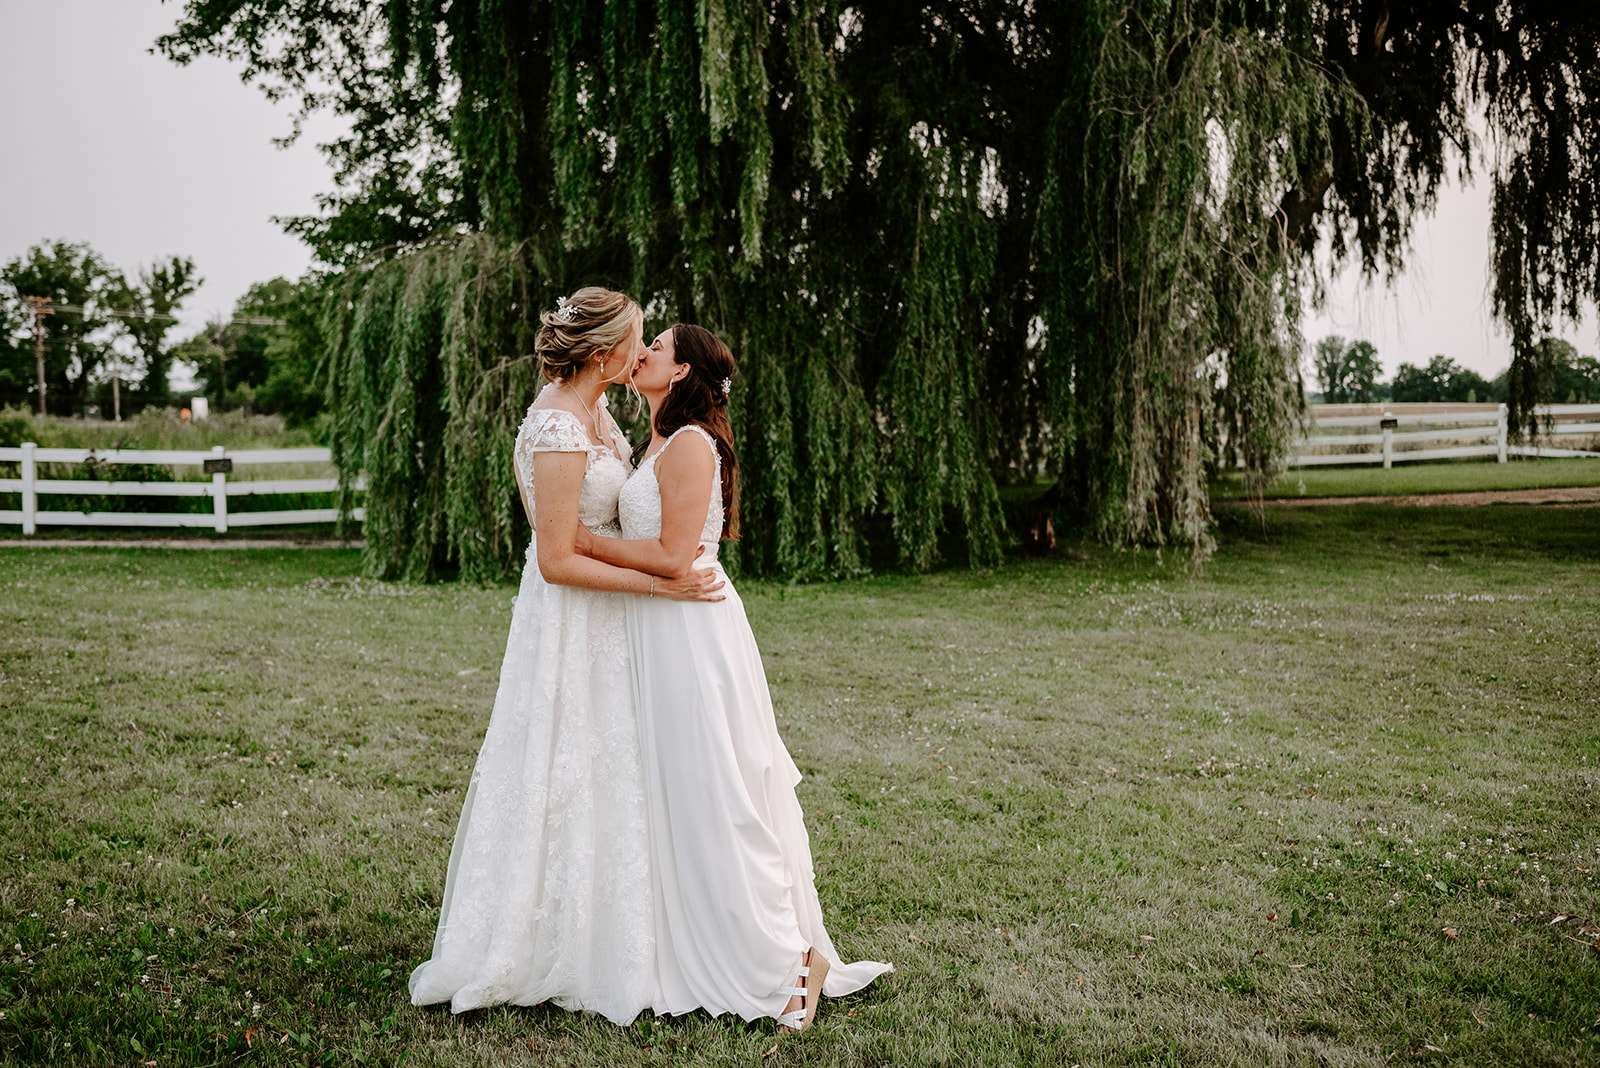 Michigan Wedding, LGBTQ+ wedding, LGBTQ+ wedding photographer, Michigan Wedding Photographer, Liv lyszyk Wedding Photography